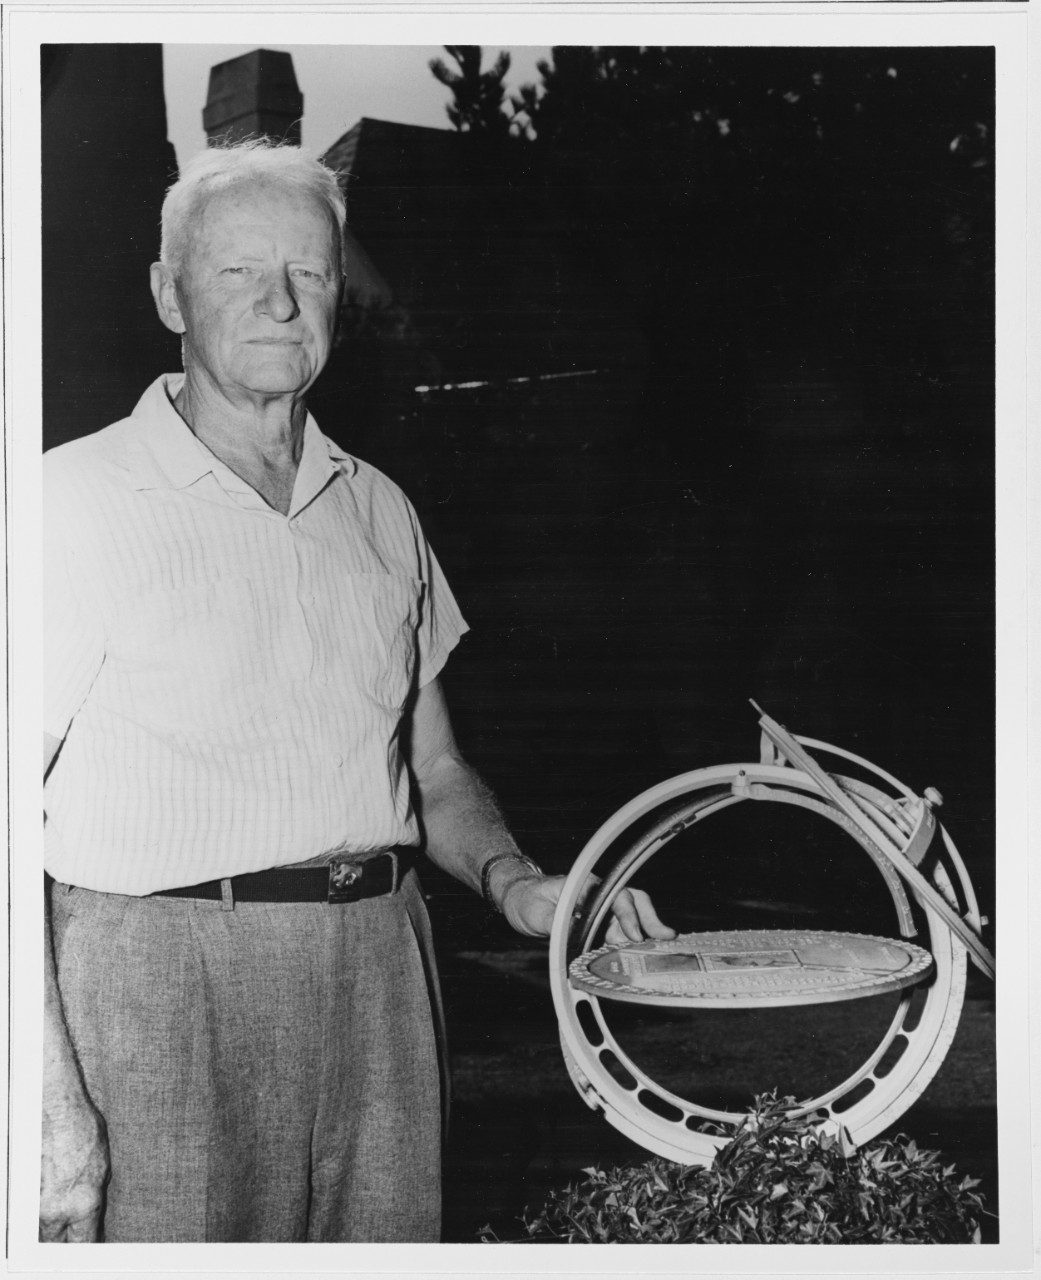 Nimitz with his Sundial